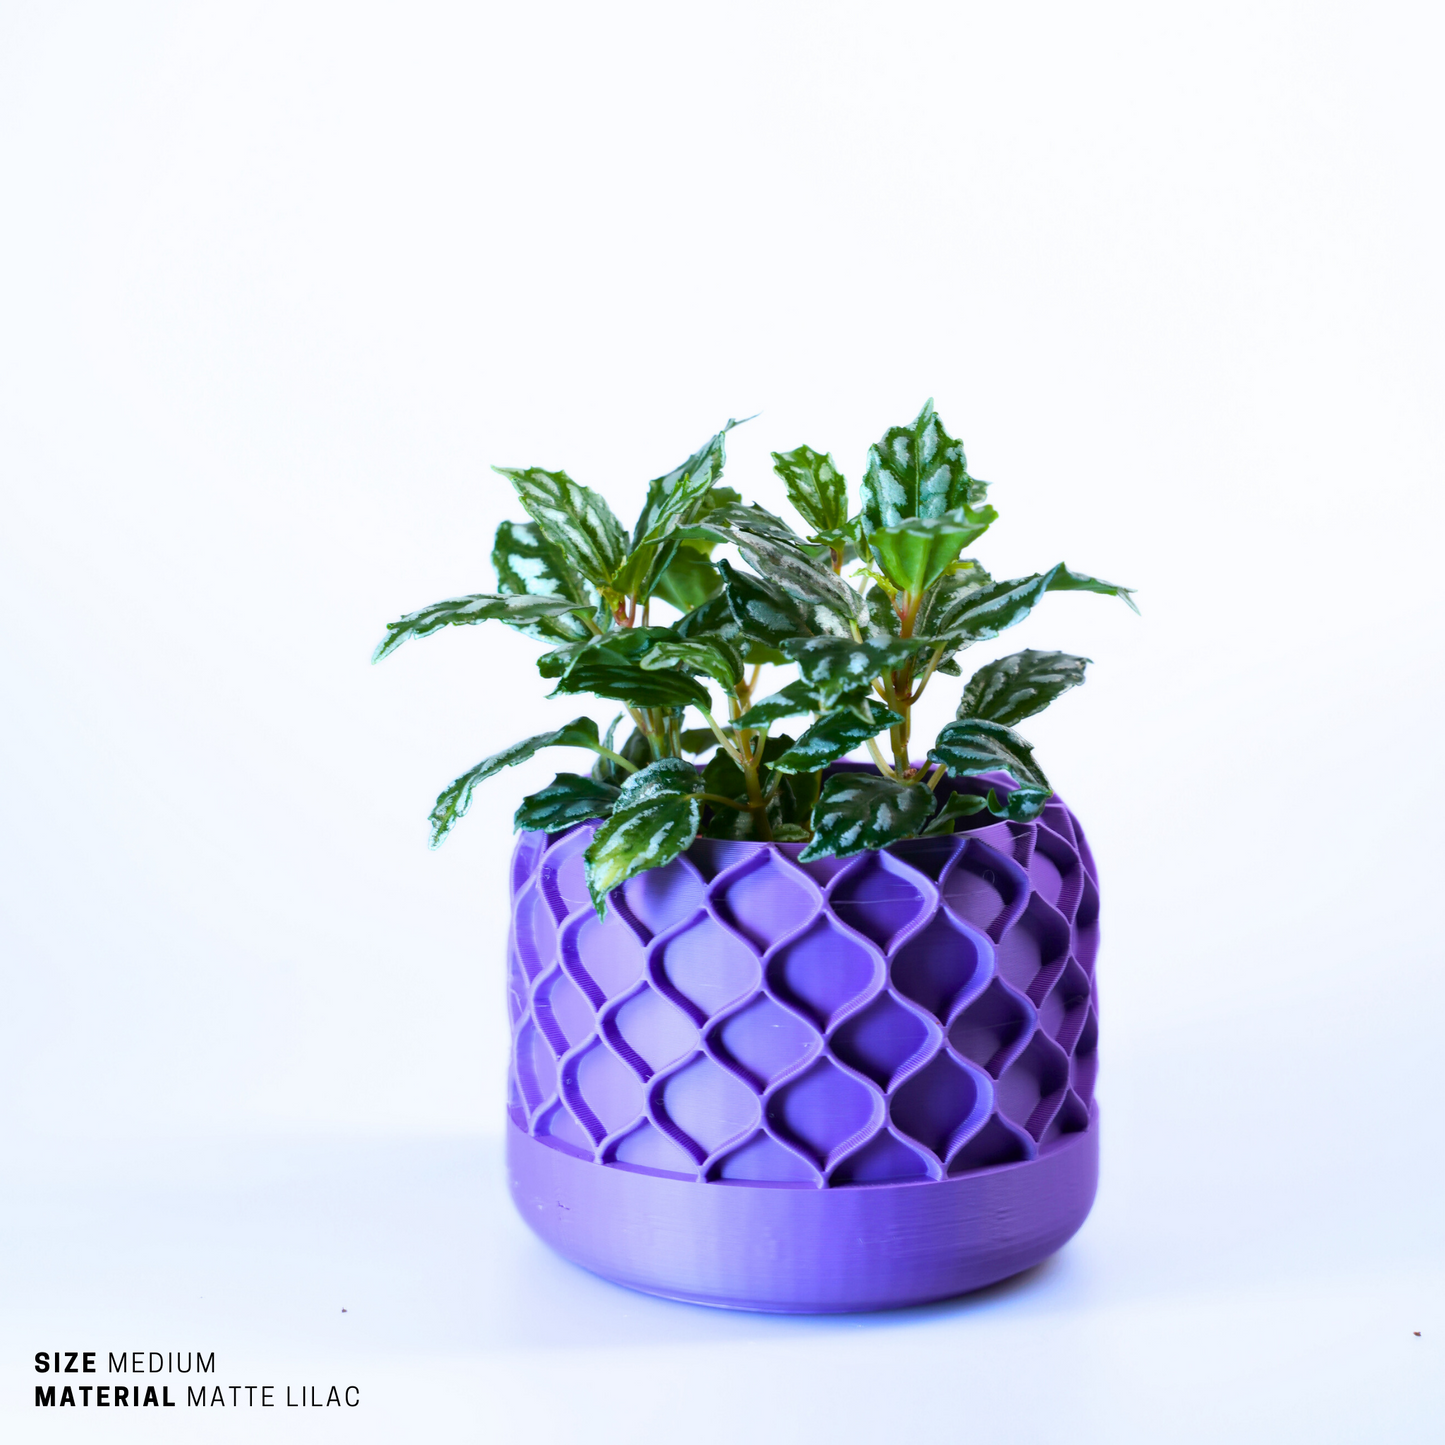 Planter - Sustainable Stylish Planter Pot - 6